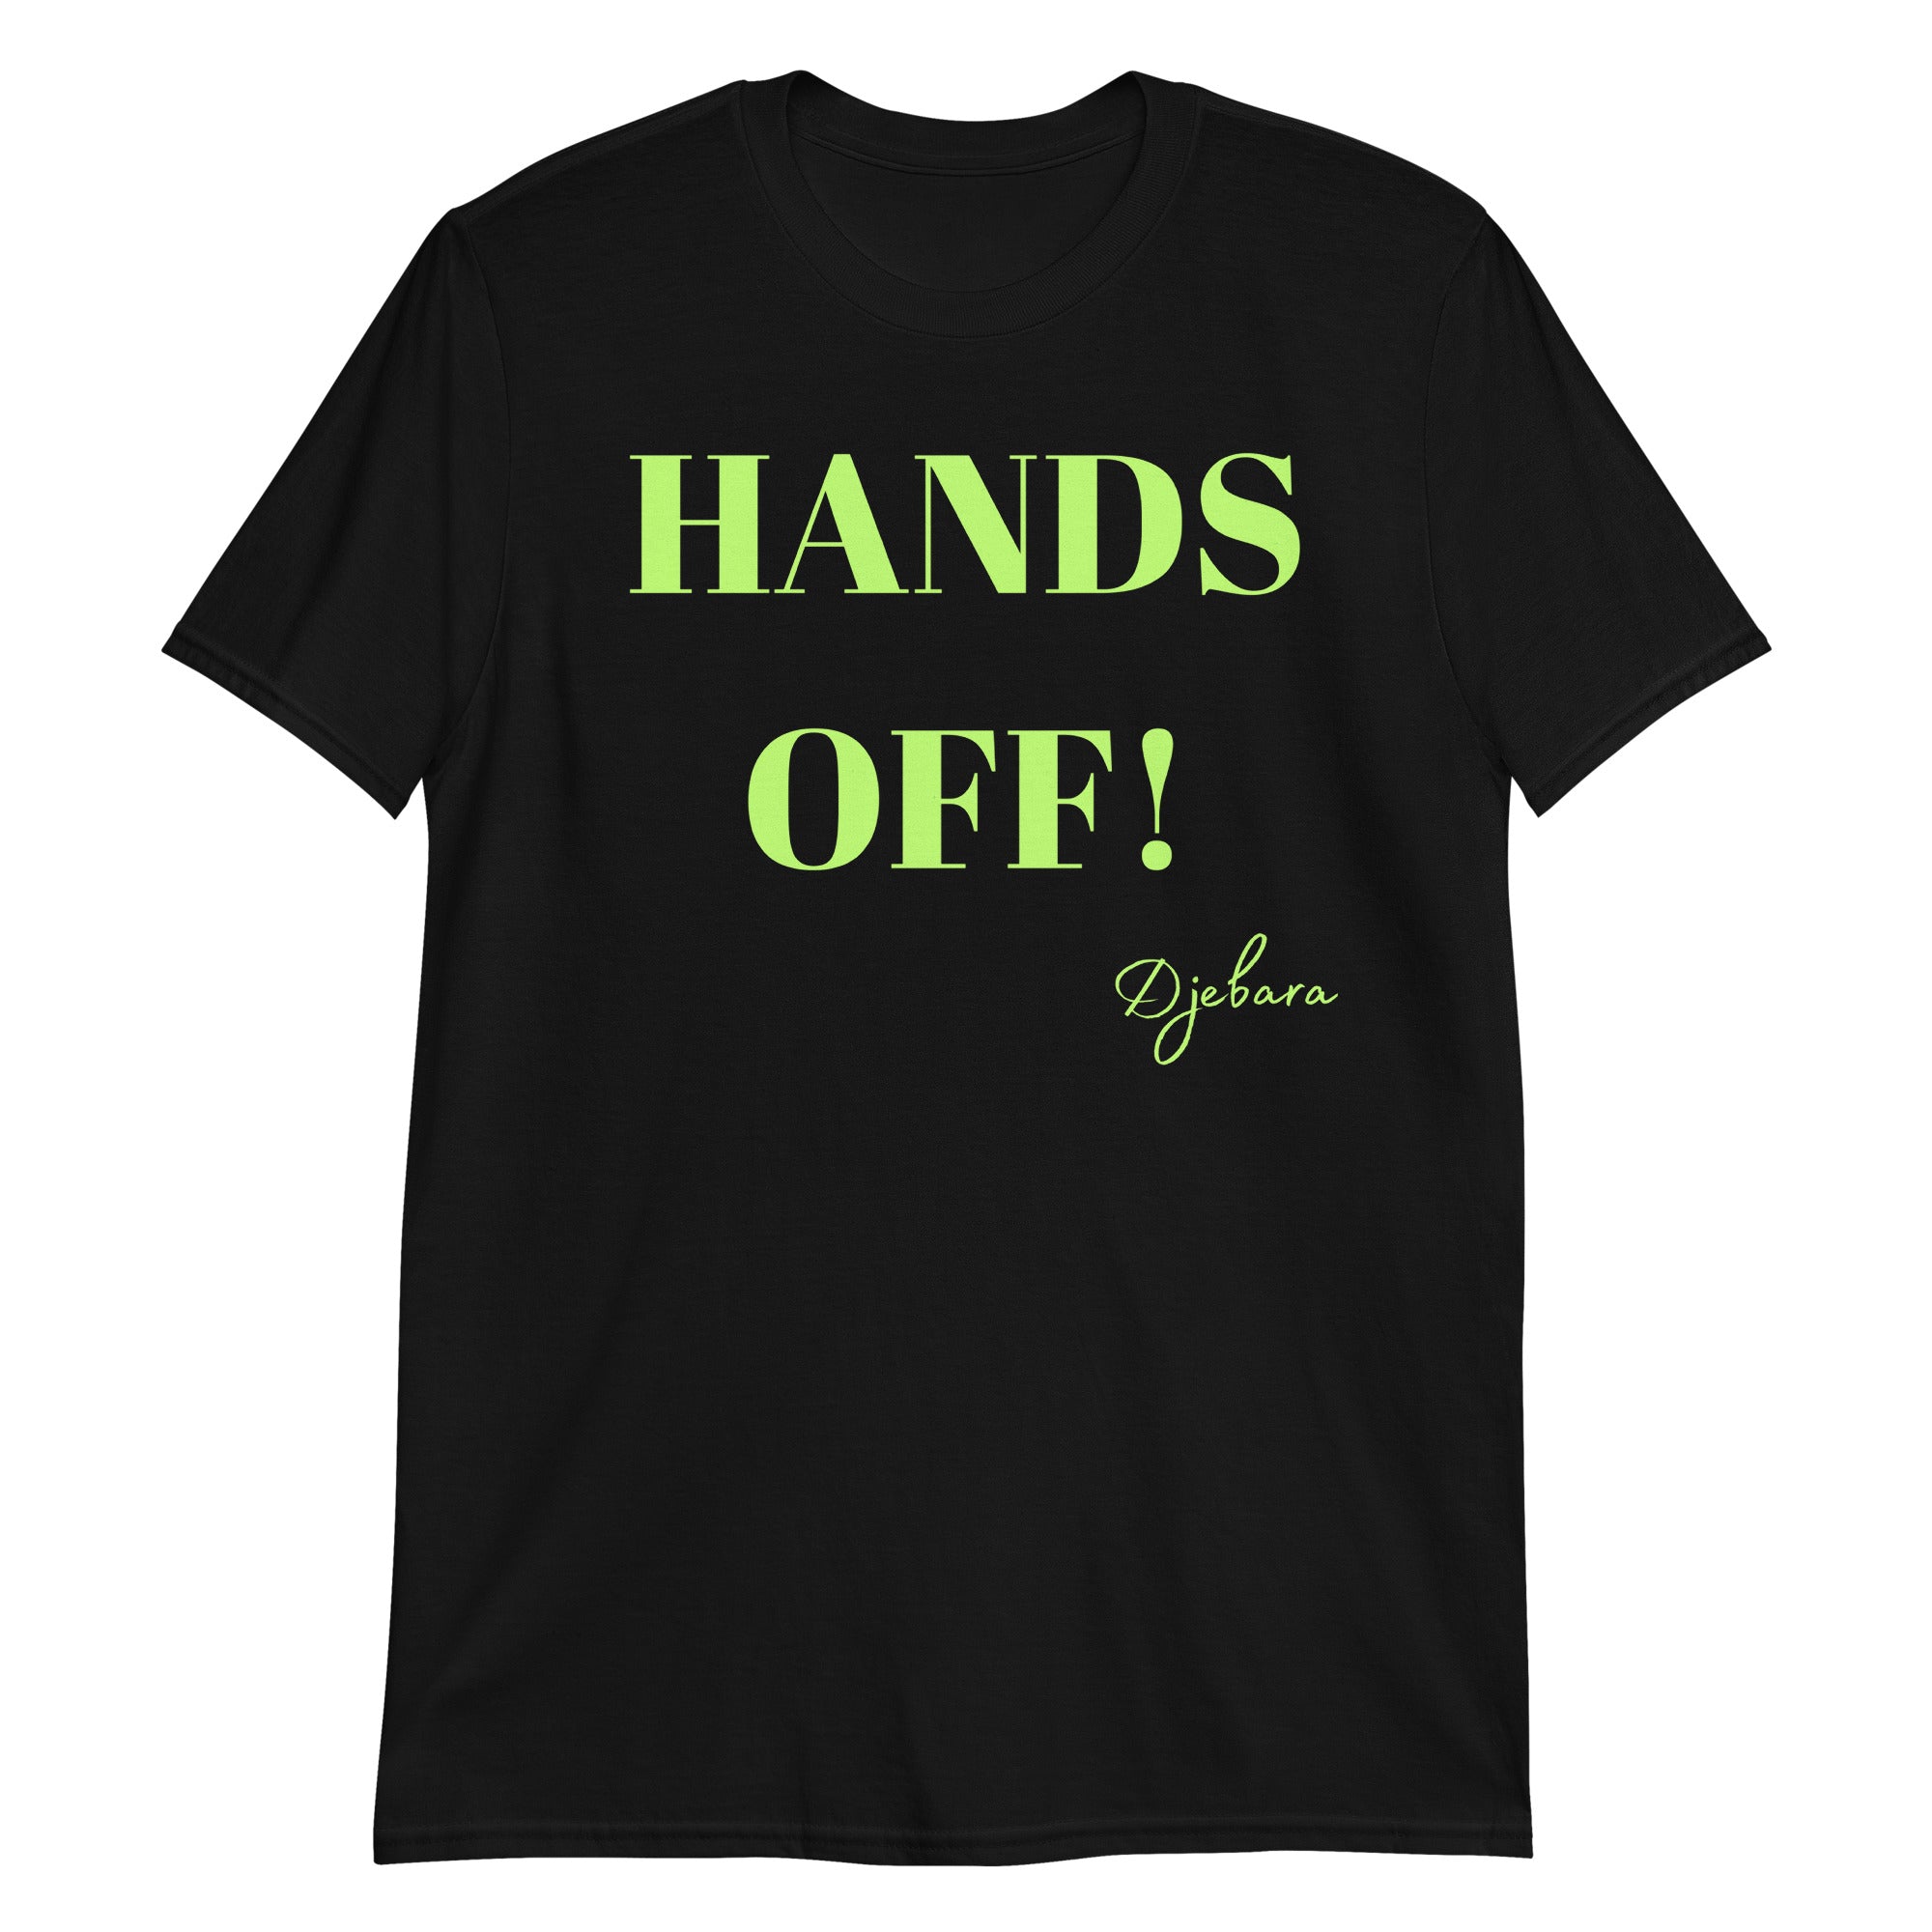 HANDS OFF! Short-Sleeve Gildan Unisex T-Shirt (Lime) S-3XL